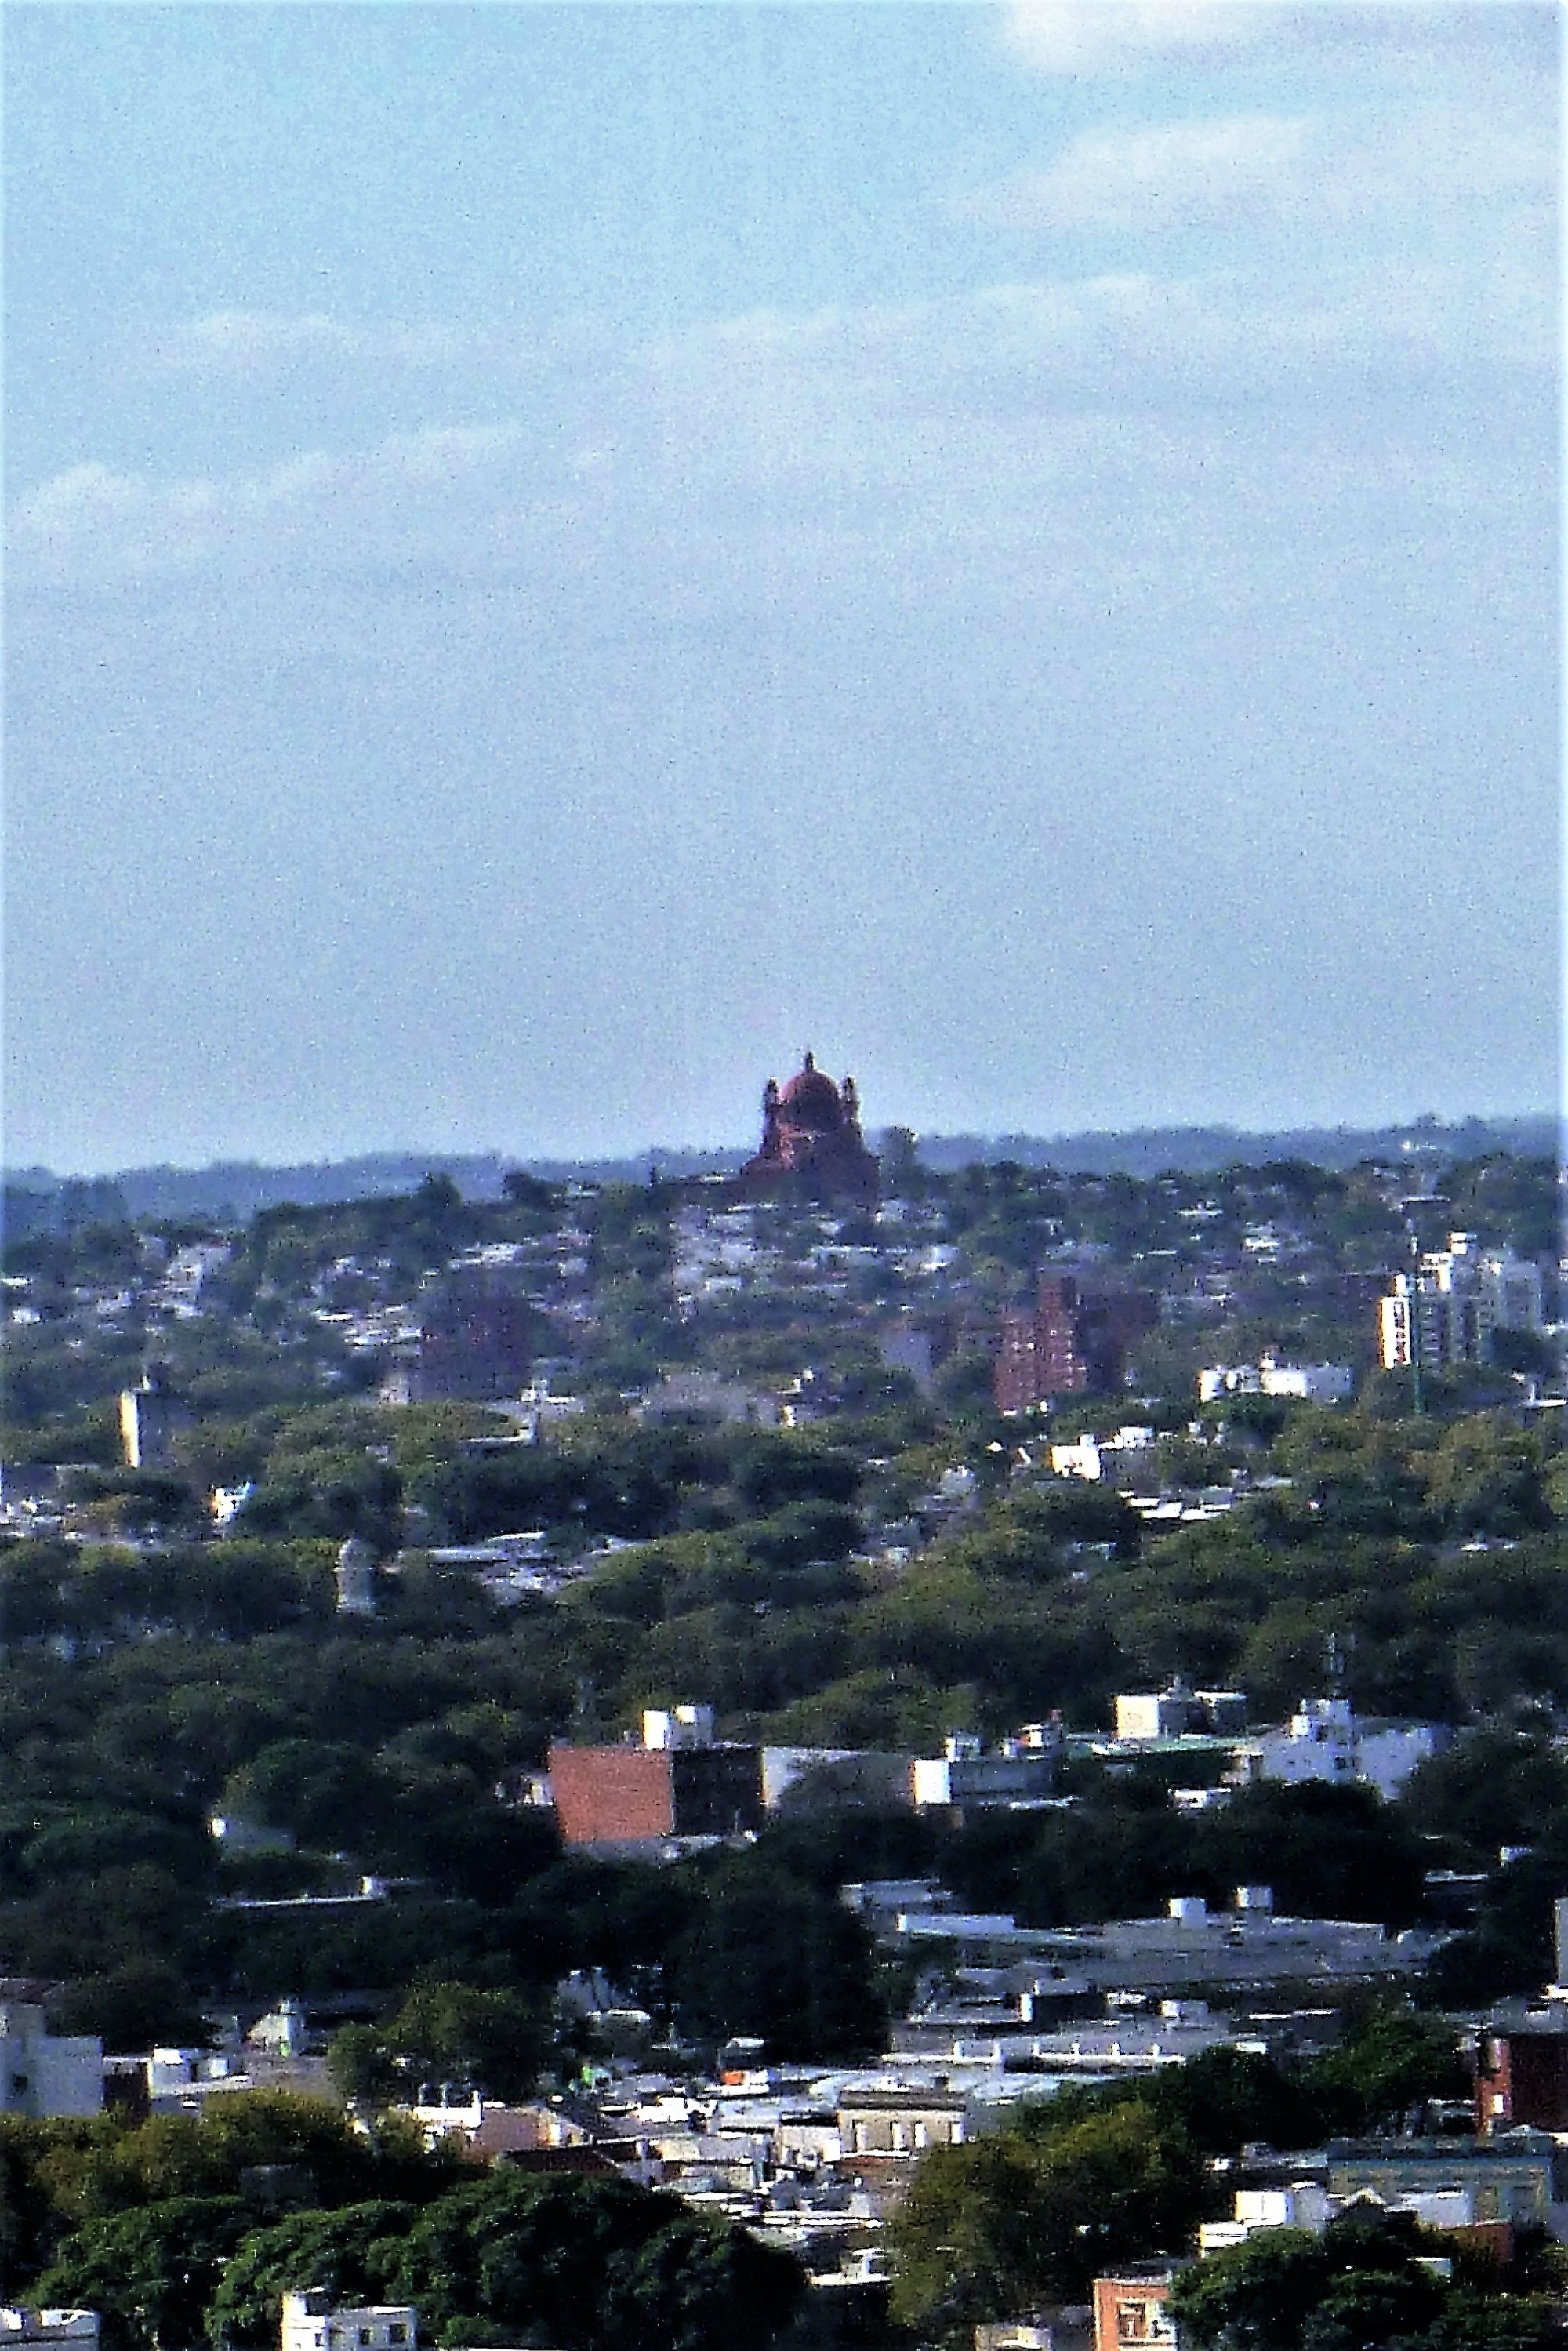 View of dome of Santuario Nacional del Corazón de Jesús from viewpoint